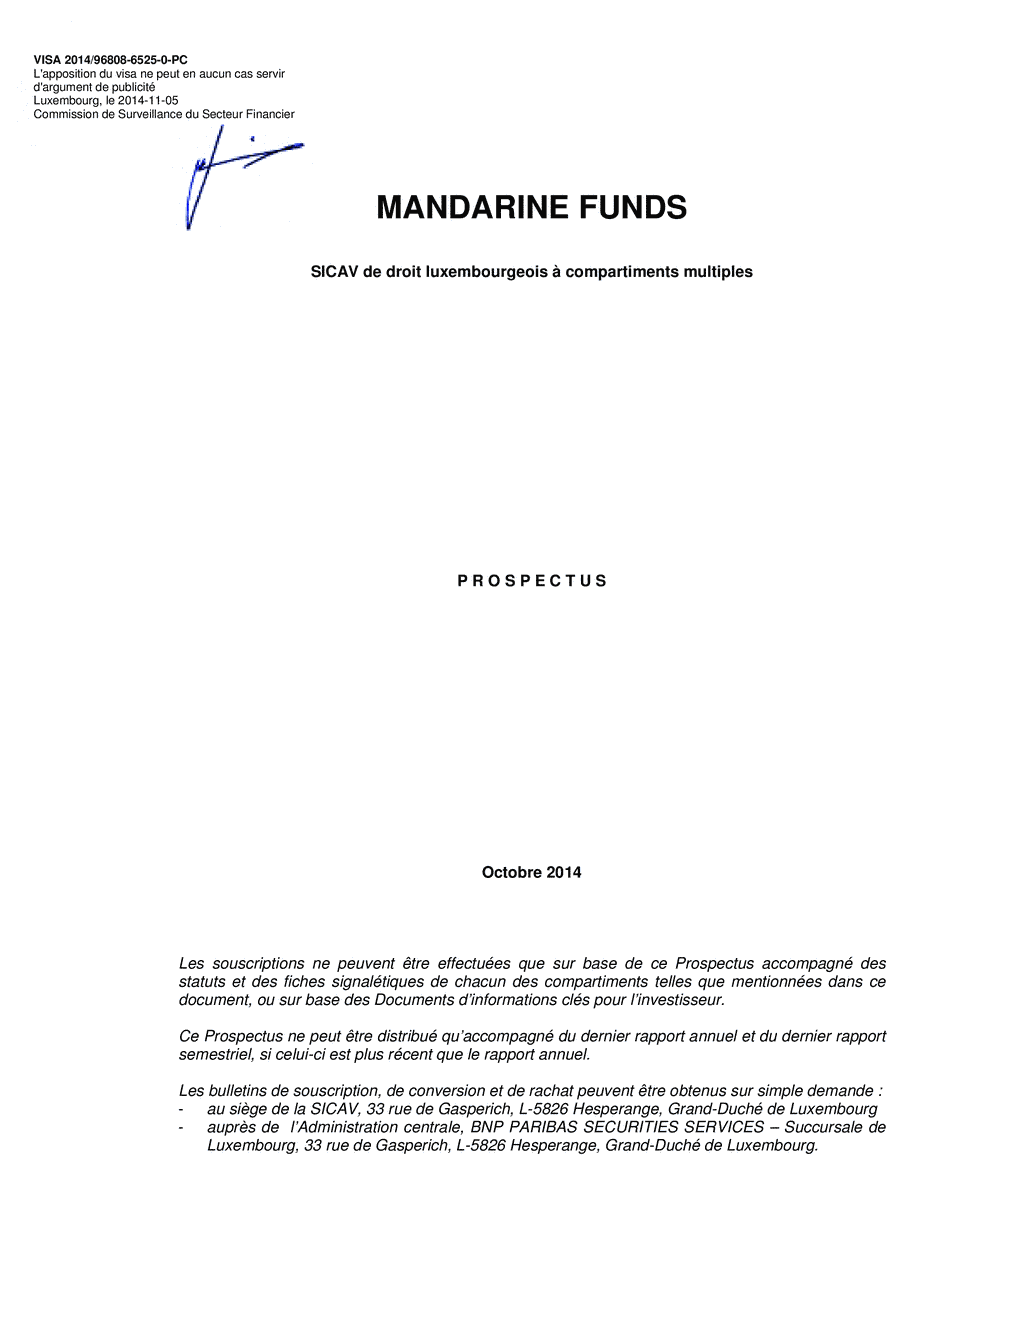 Prospectus Mandarine Funds - Mandarine Unique Small & Mid Caps Europe G - 05/11/2014 - Français